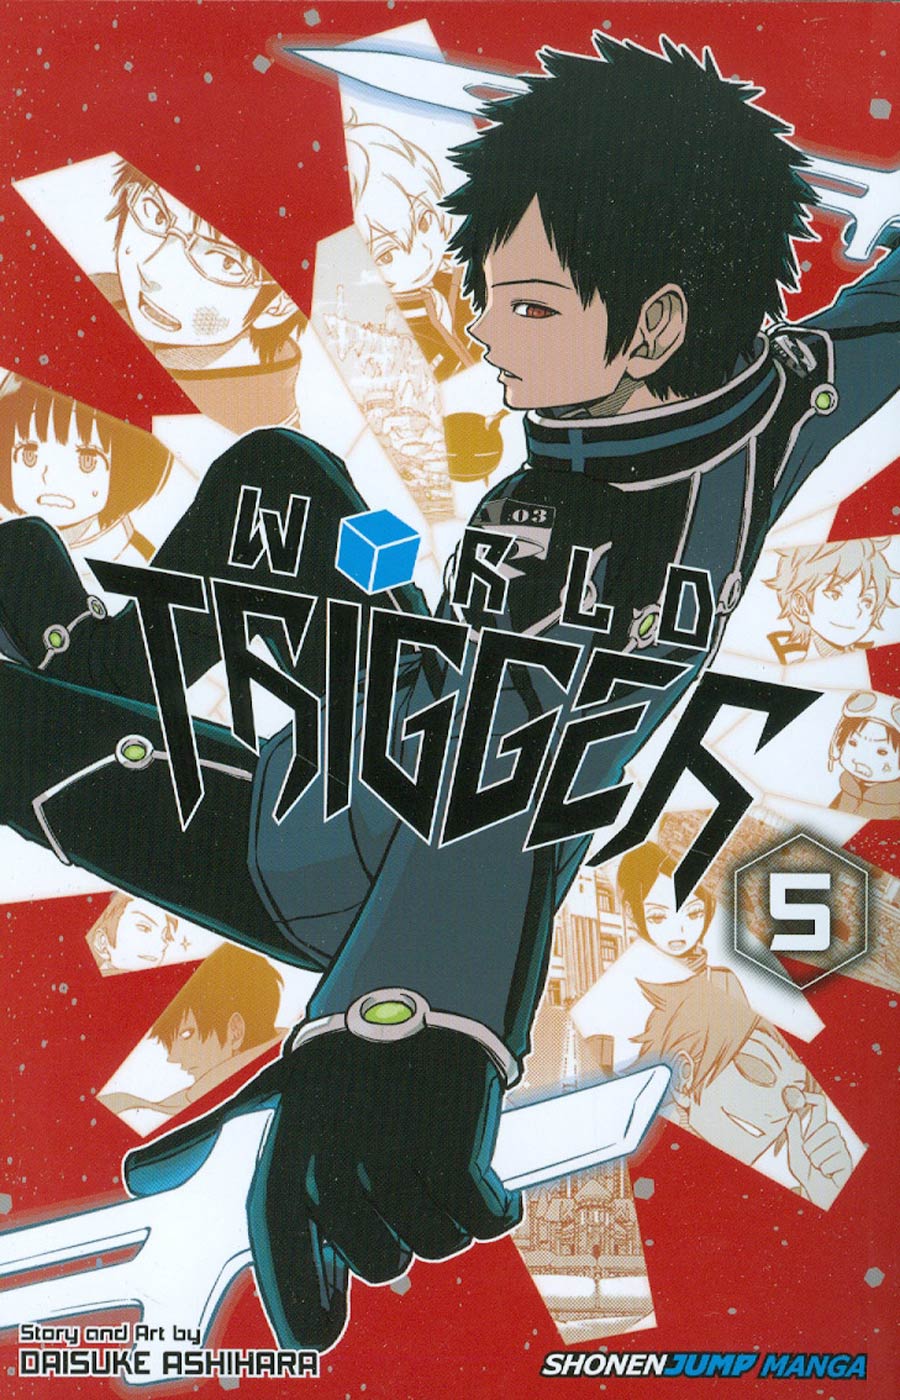 World Trigger Vol 5 TP